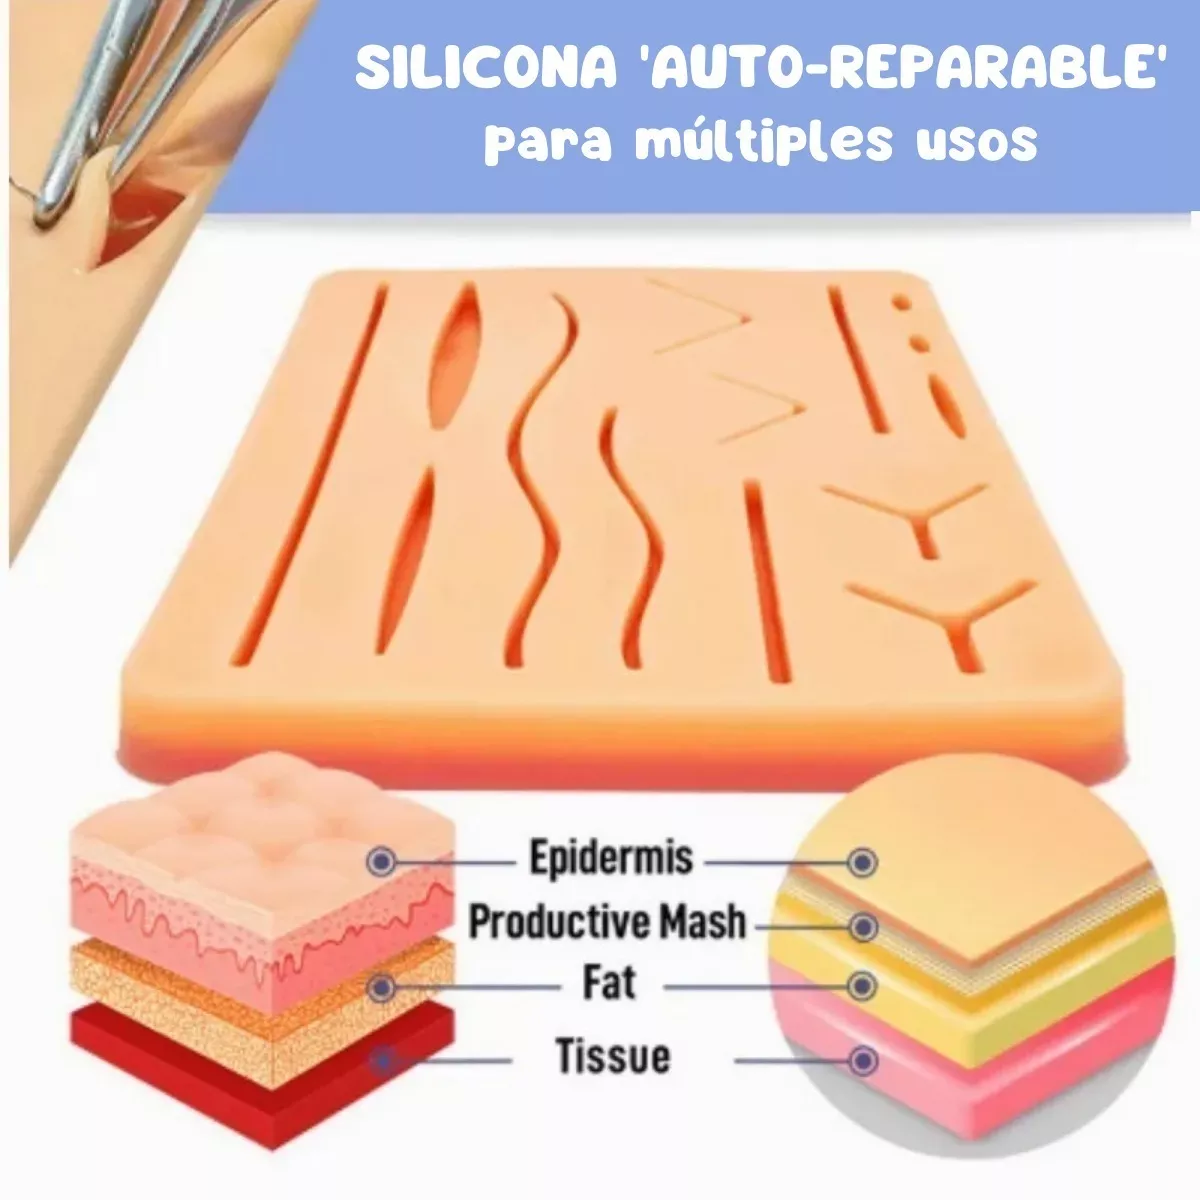 Tercera imagen para búsqueda de pad para sutura